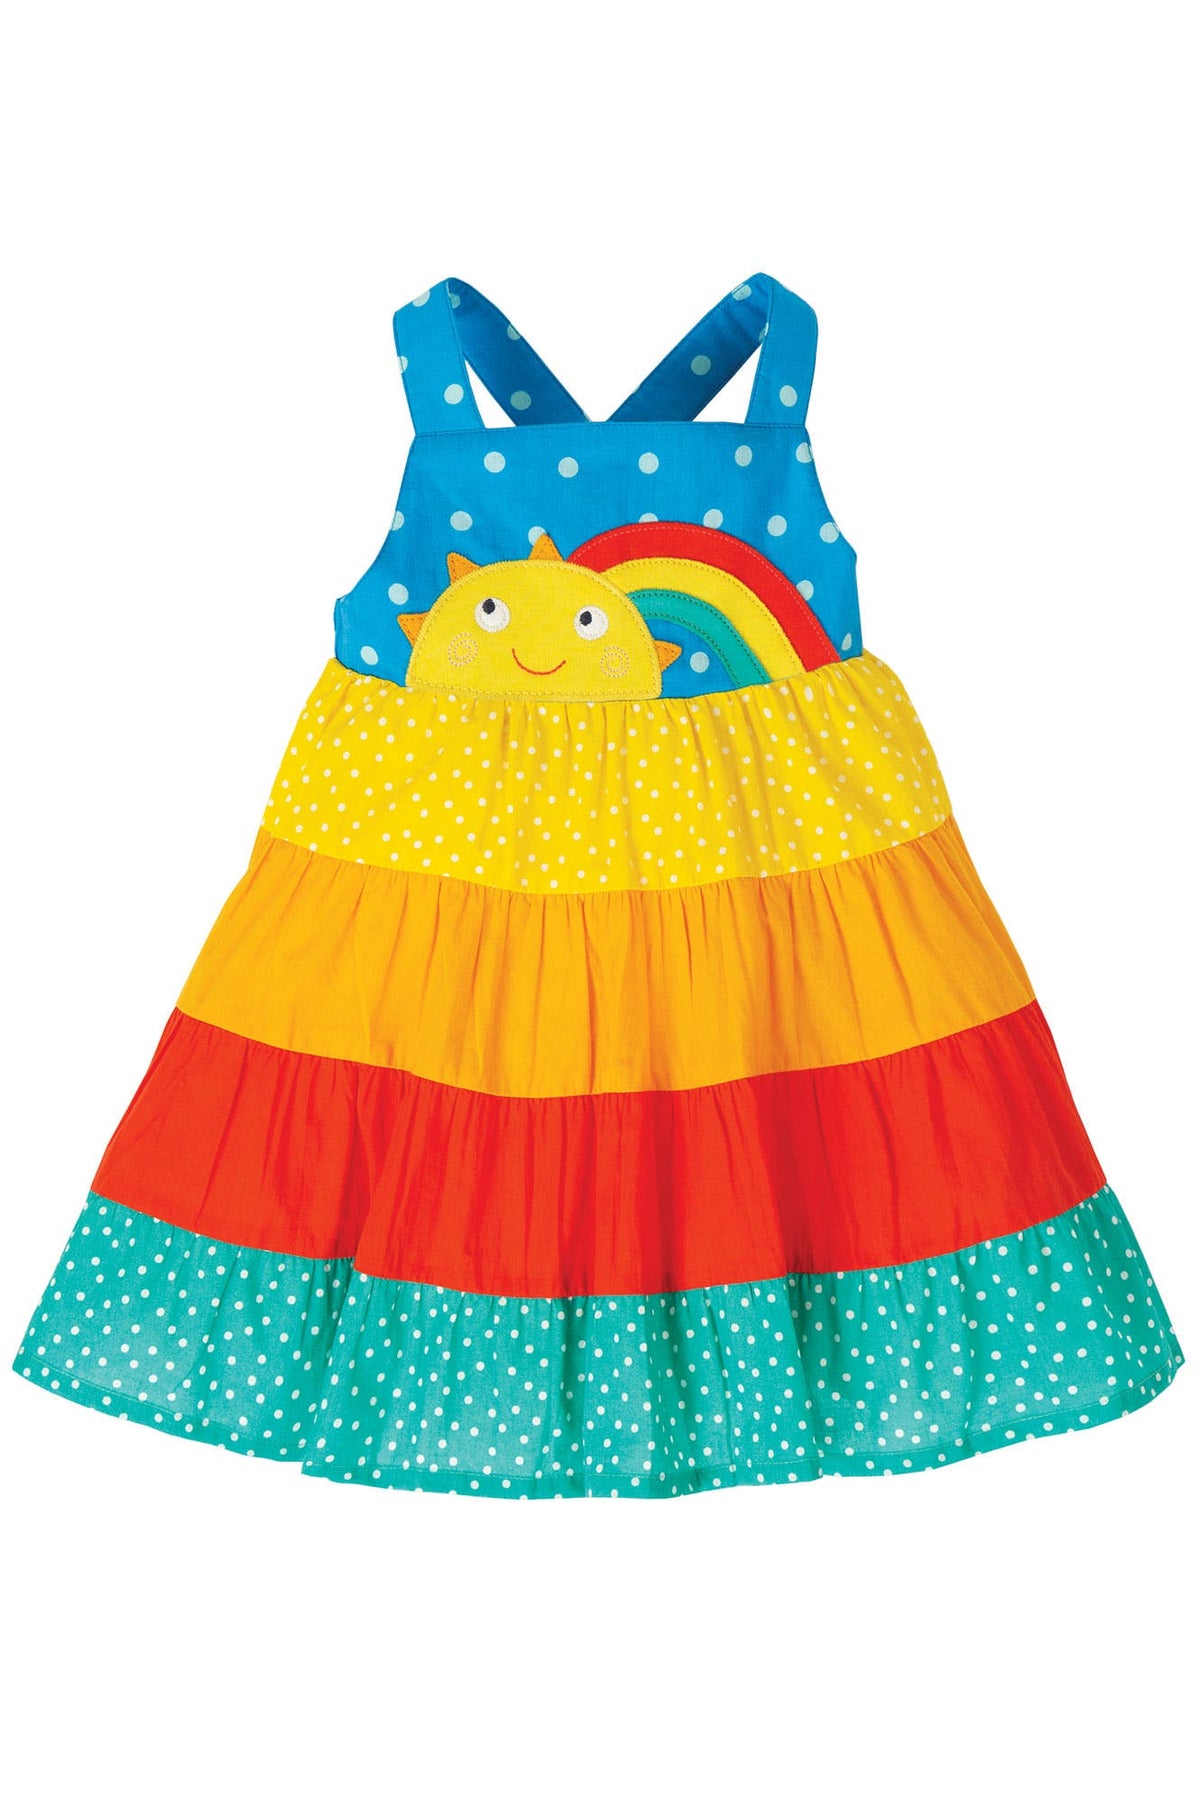 Kleid Regenbogen mit Sonnen-Applikation ( 0-3, 3-6 Monate) von Frugi